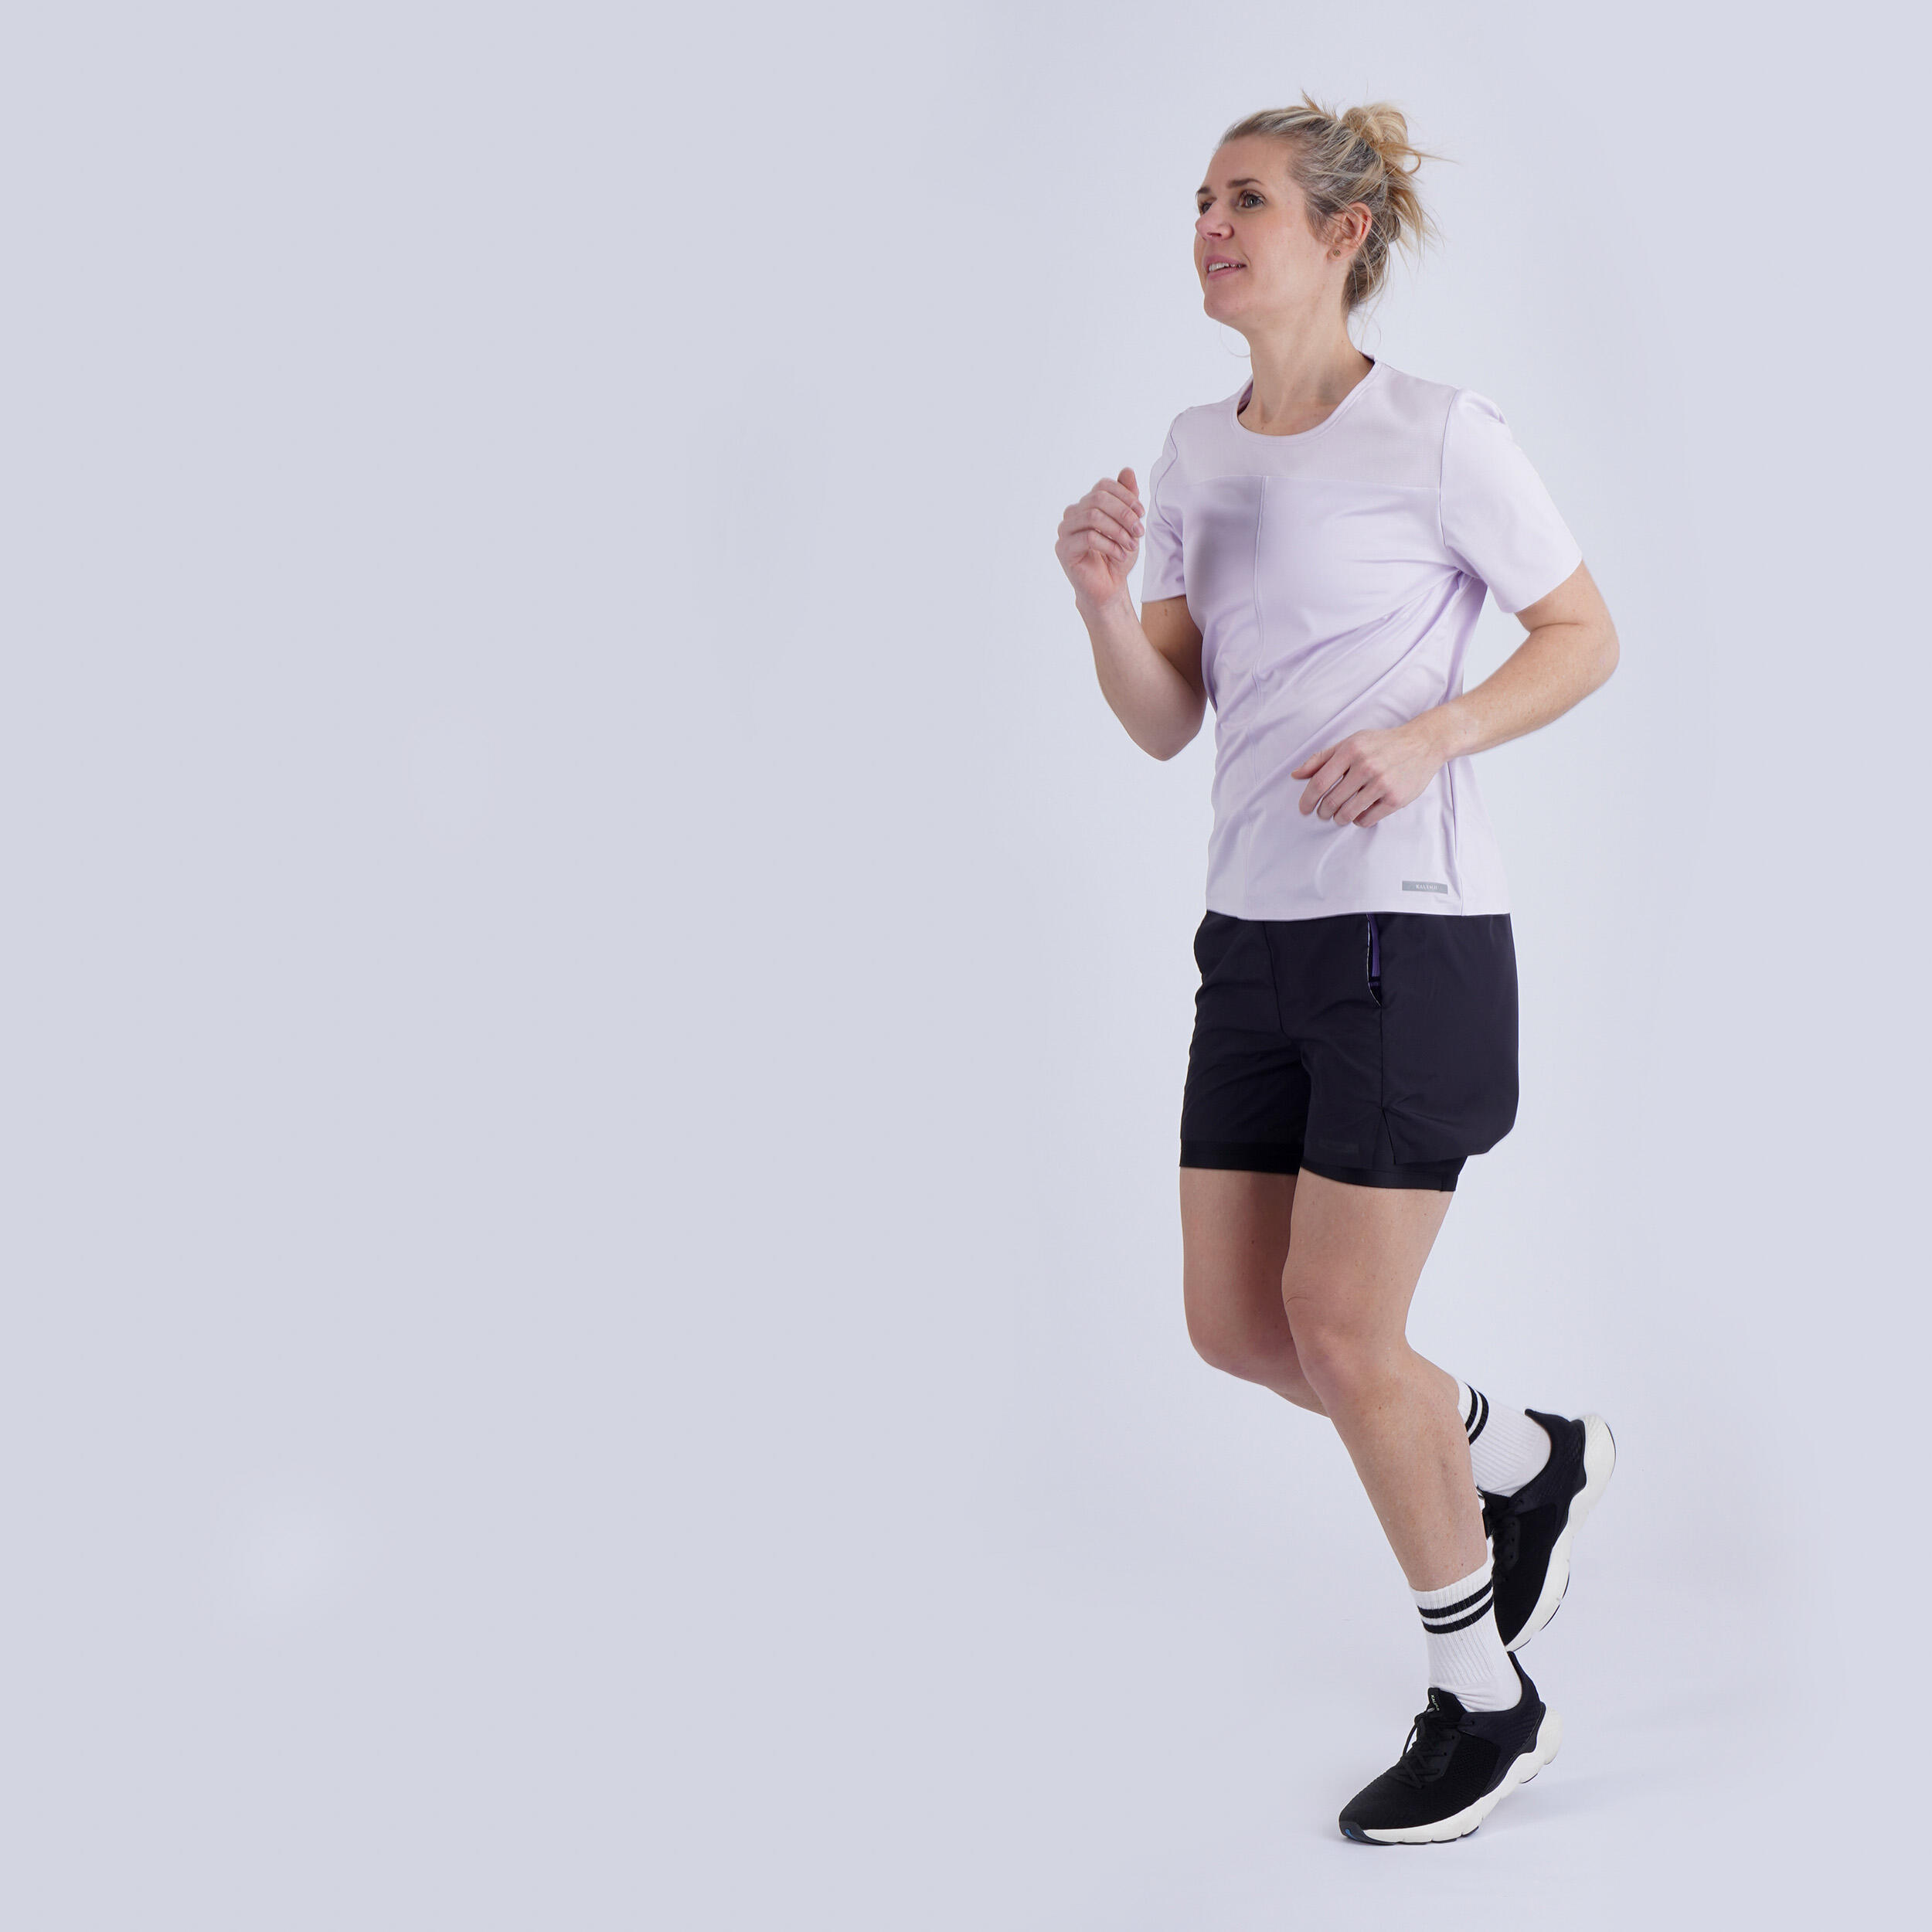 Women's Running Shorts and Skirts